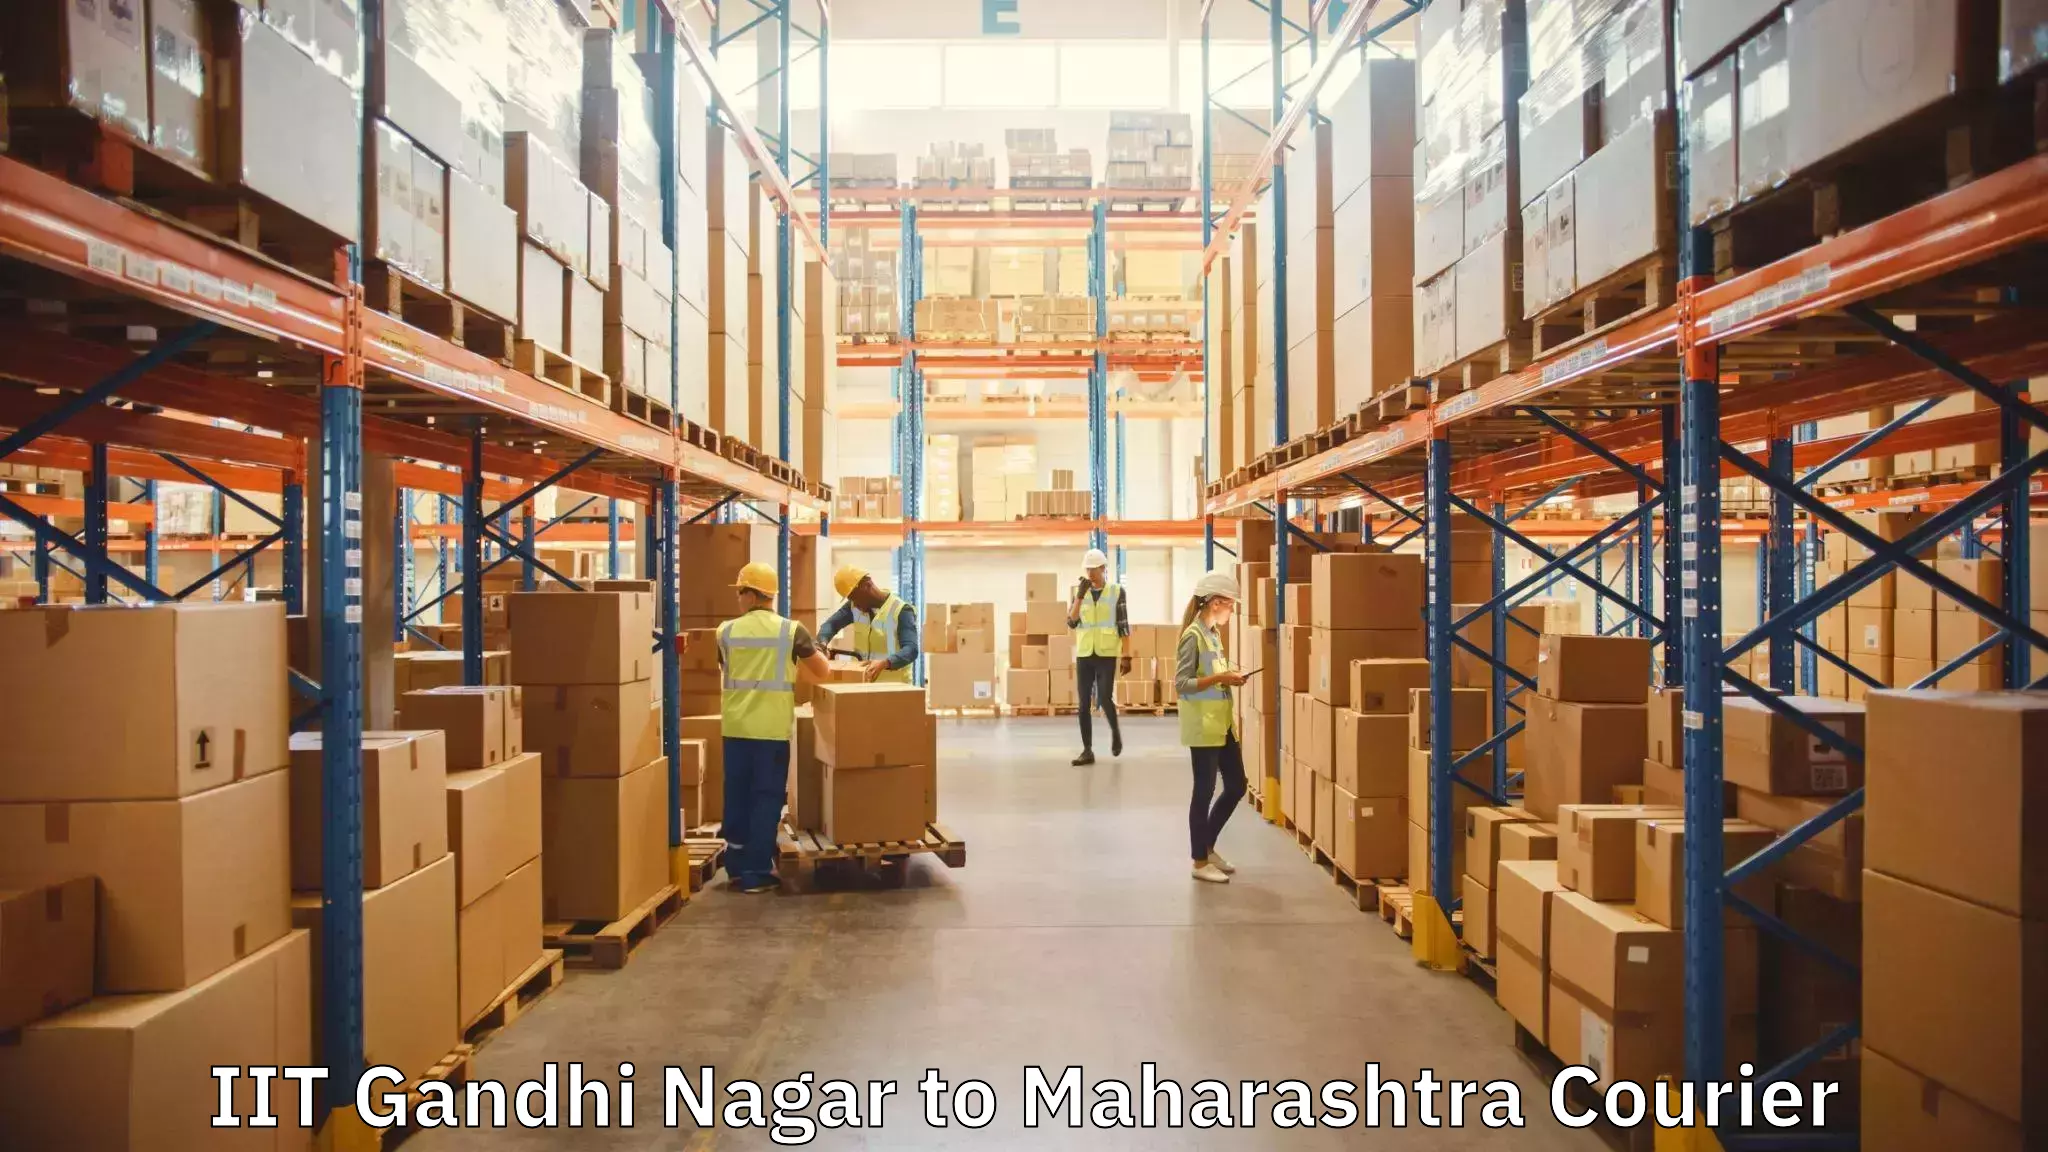 Moving and handling services IIT Gandhi Nagar to Navi Mumbai